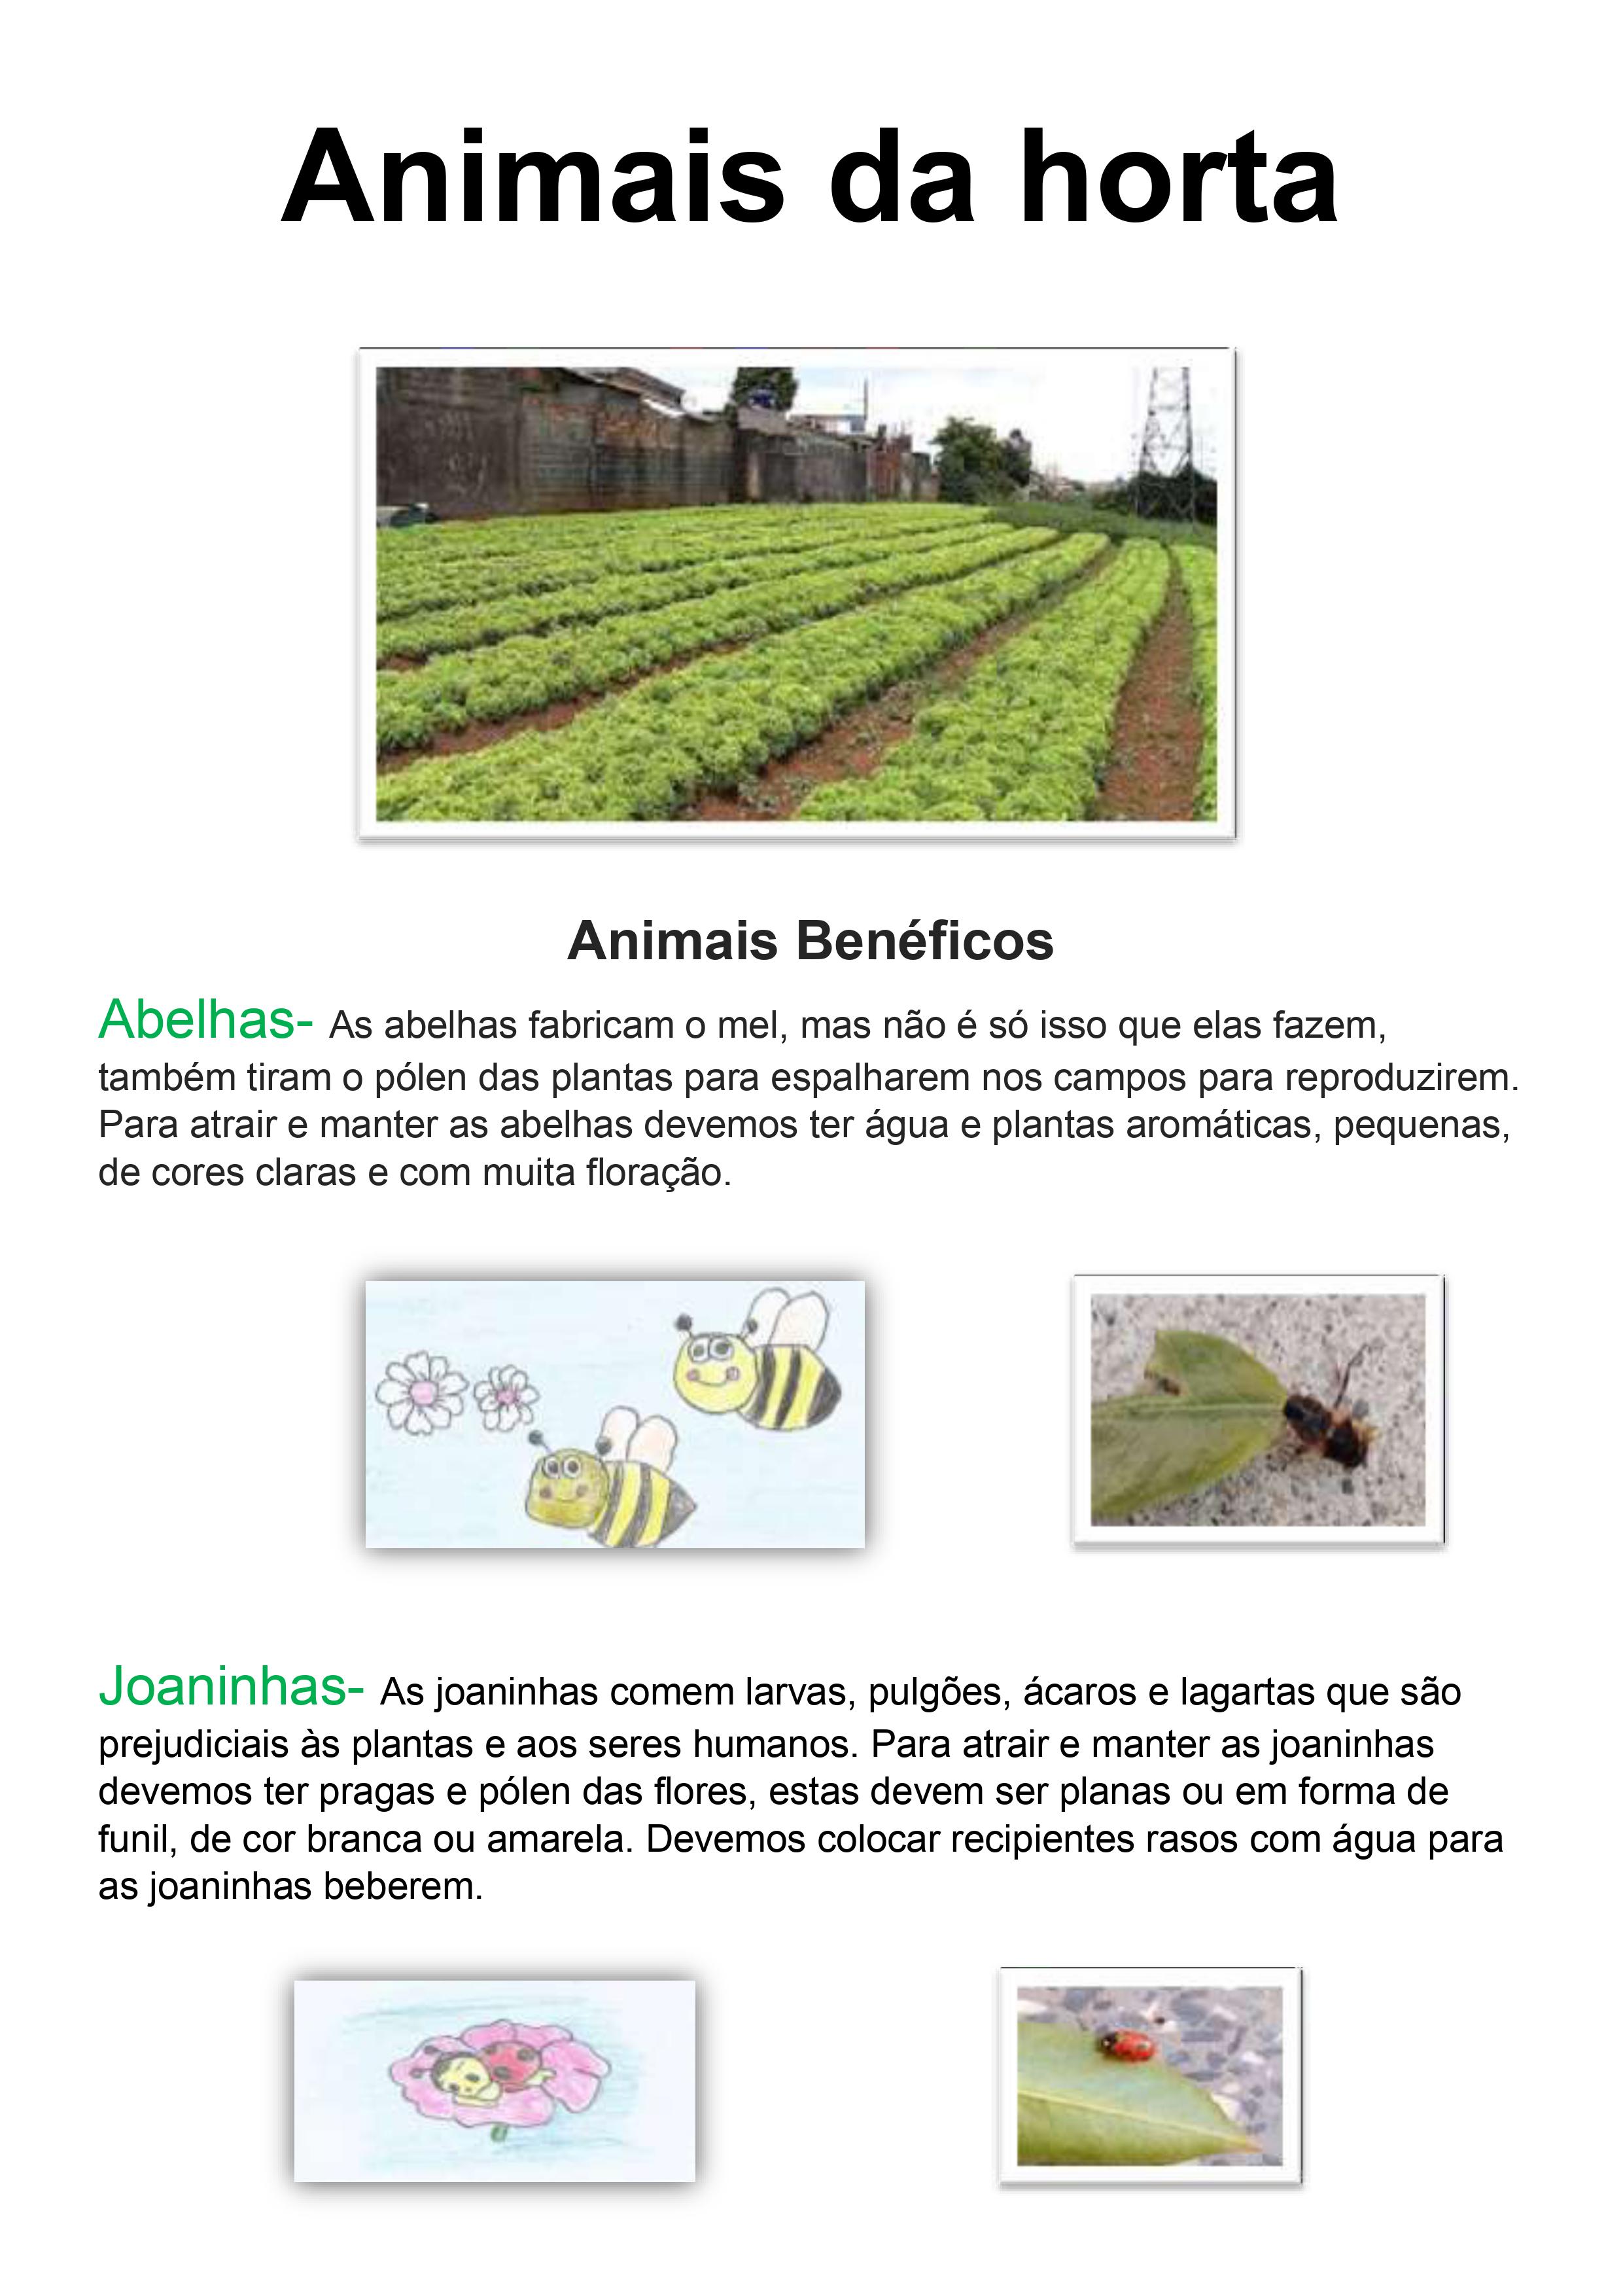 Ficha dos animais benéficos, com ilustrações.